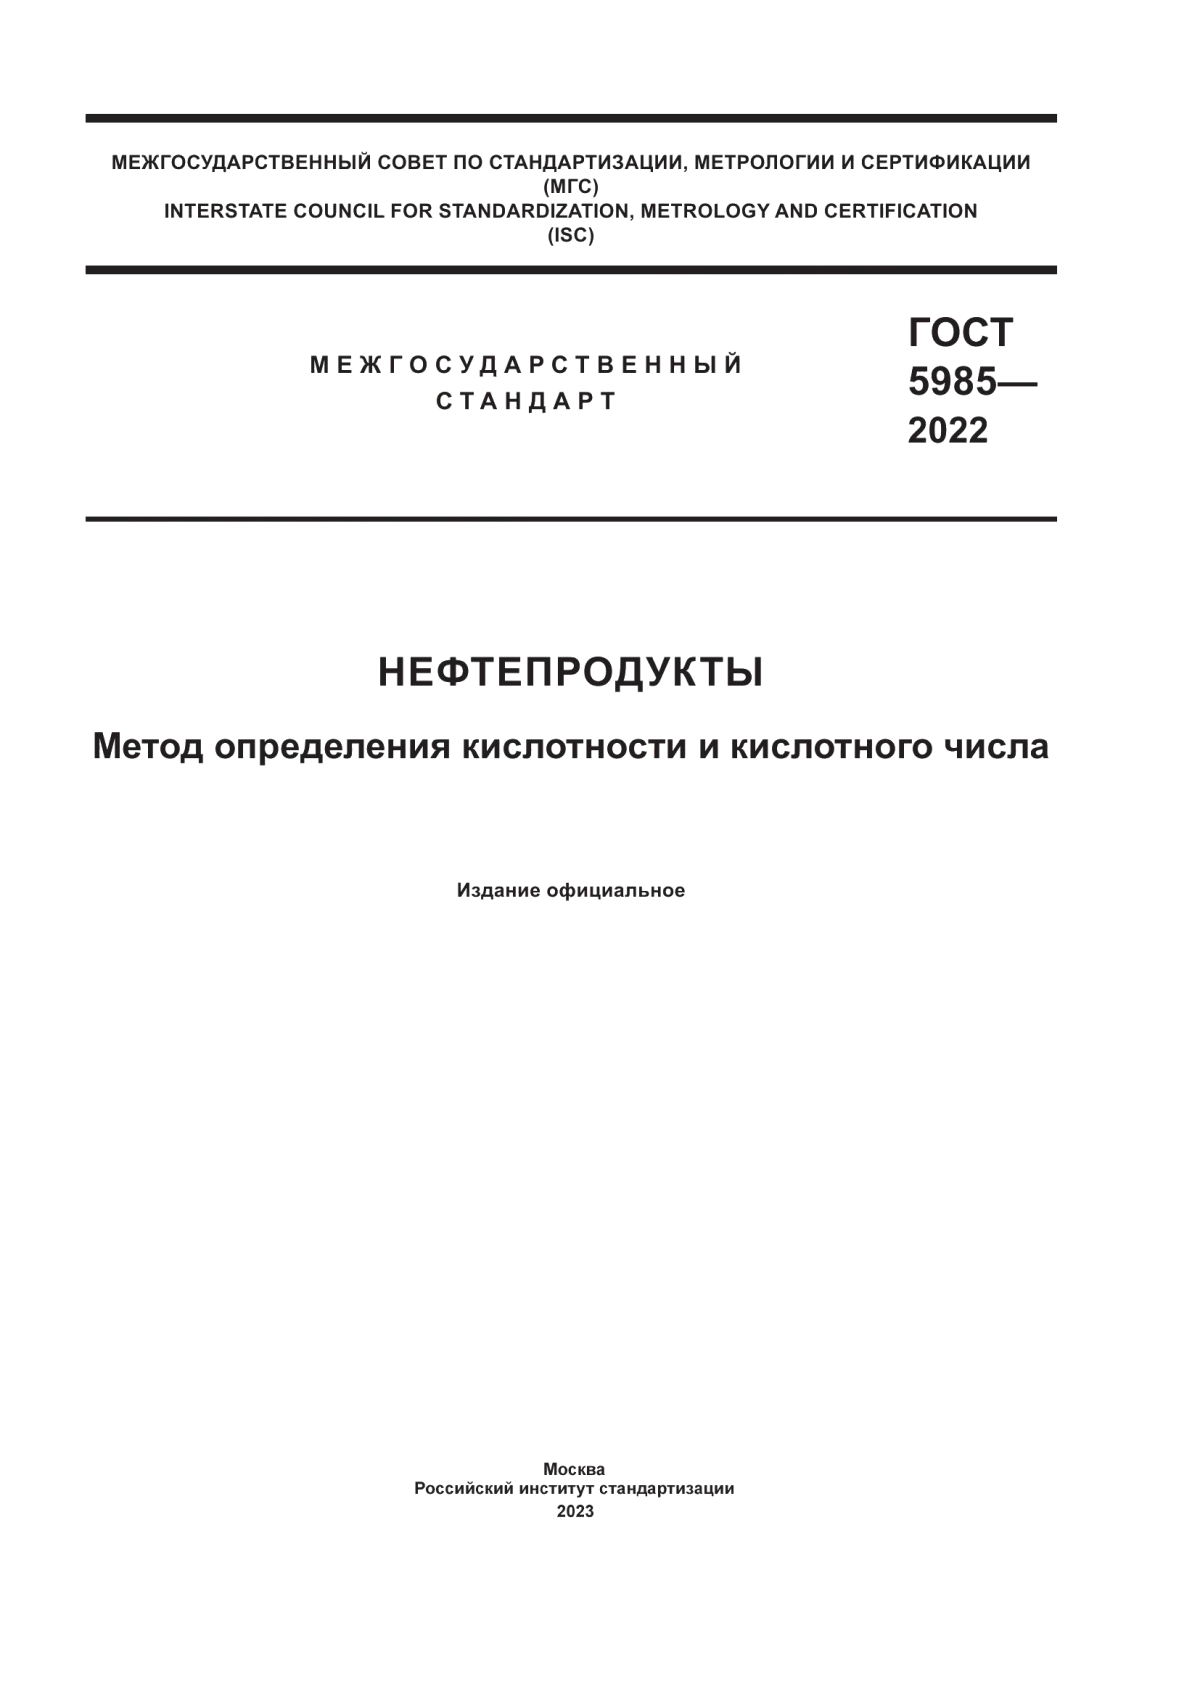 ГОСТ 5985-2022 Нефтепродукты. Метод определения кислотности и кислотного числа